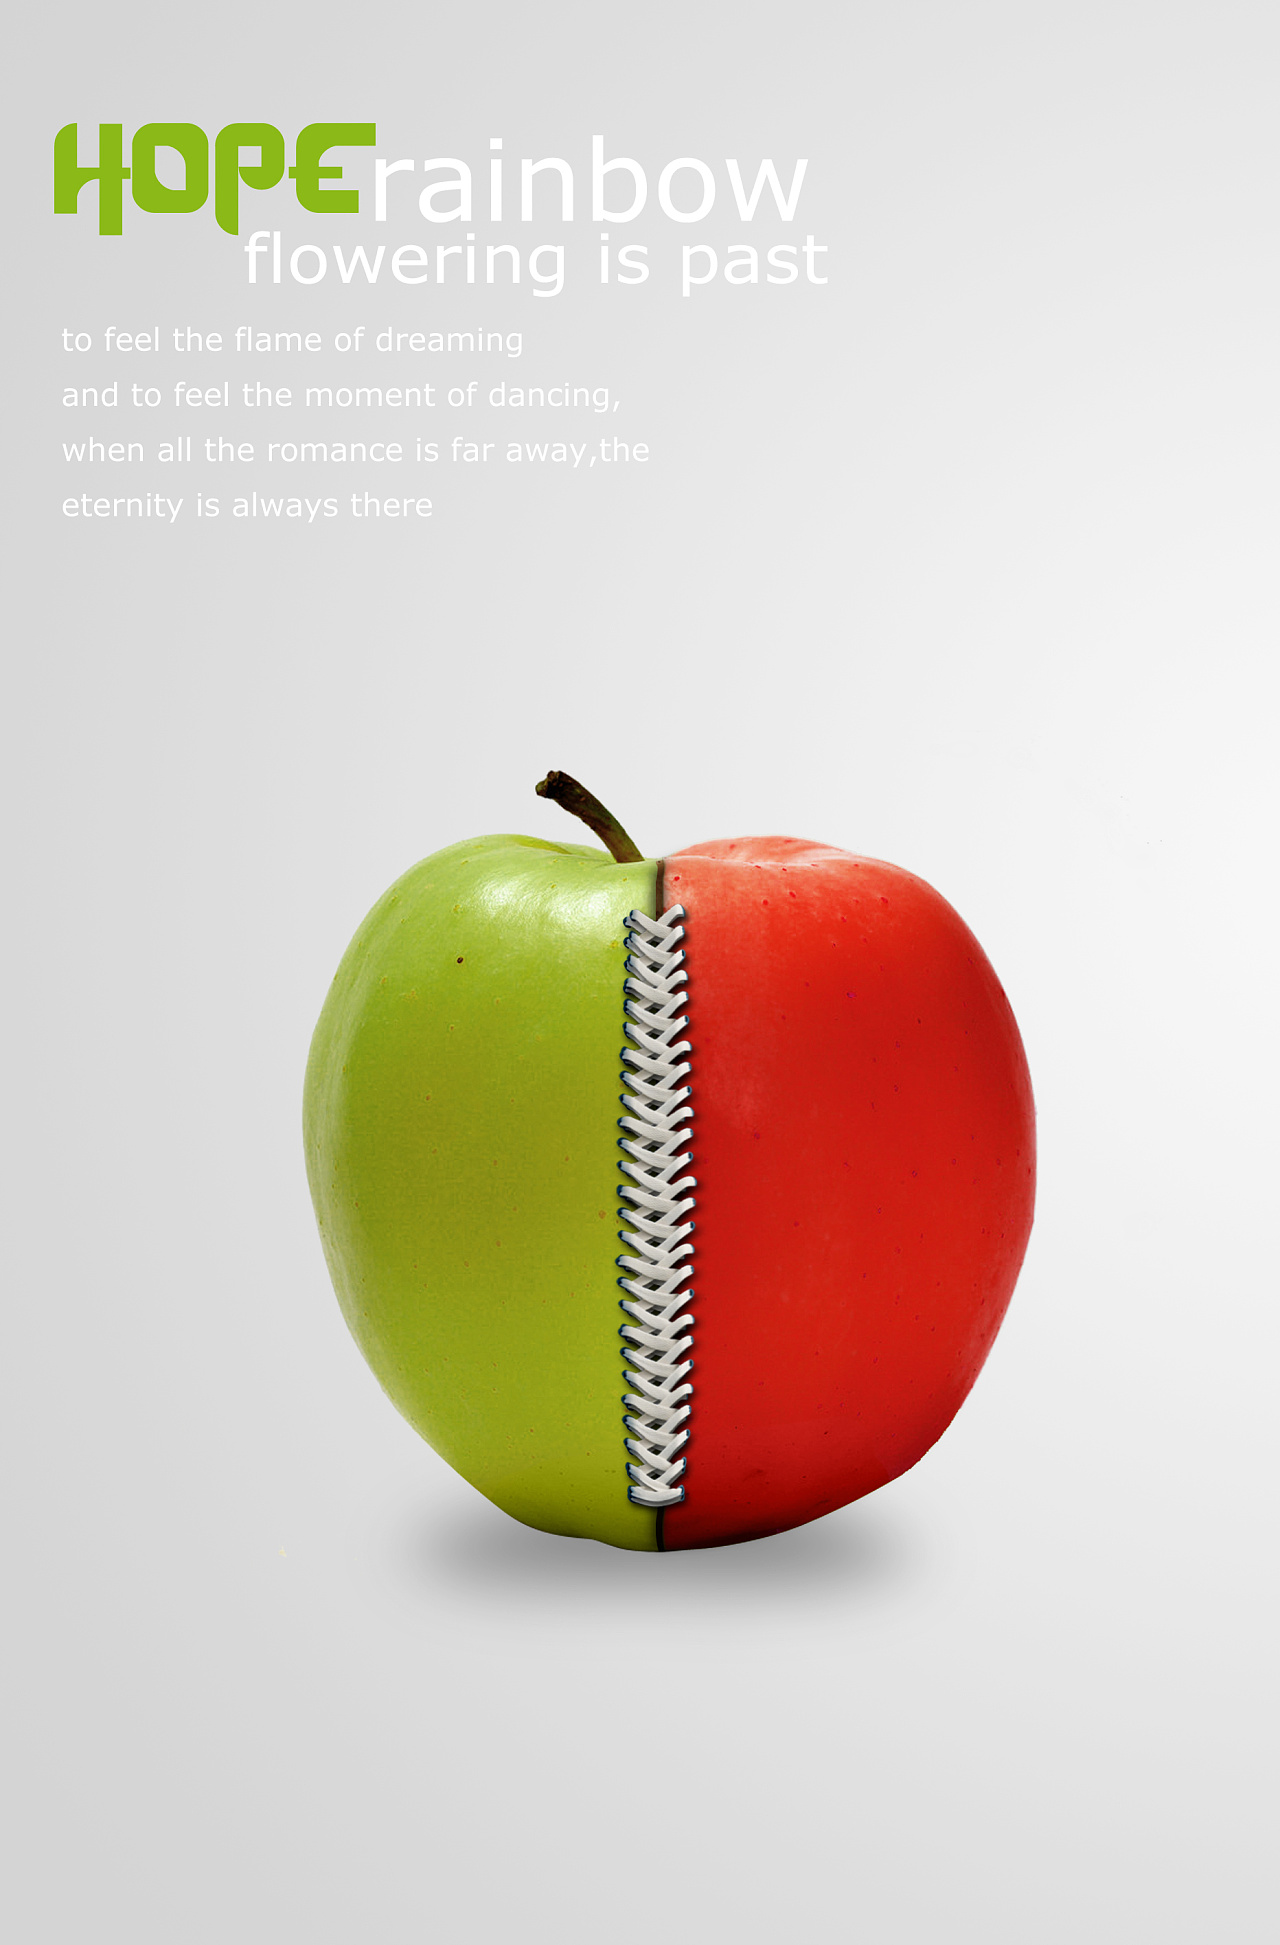 以苹果和鞋带为联想,做了一个思想创新的海报